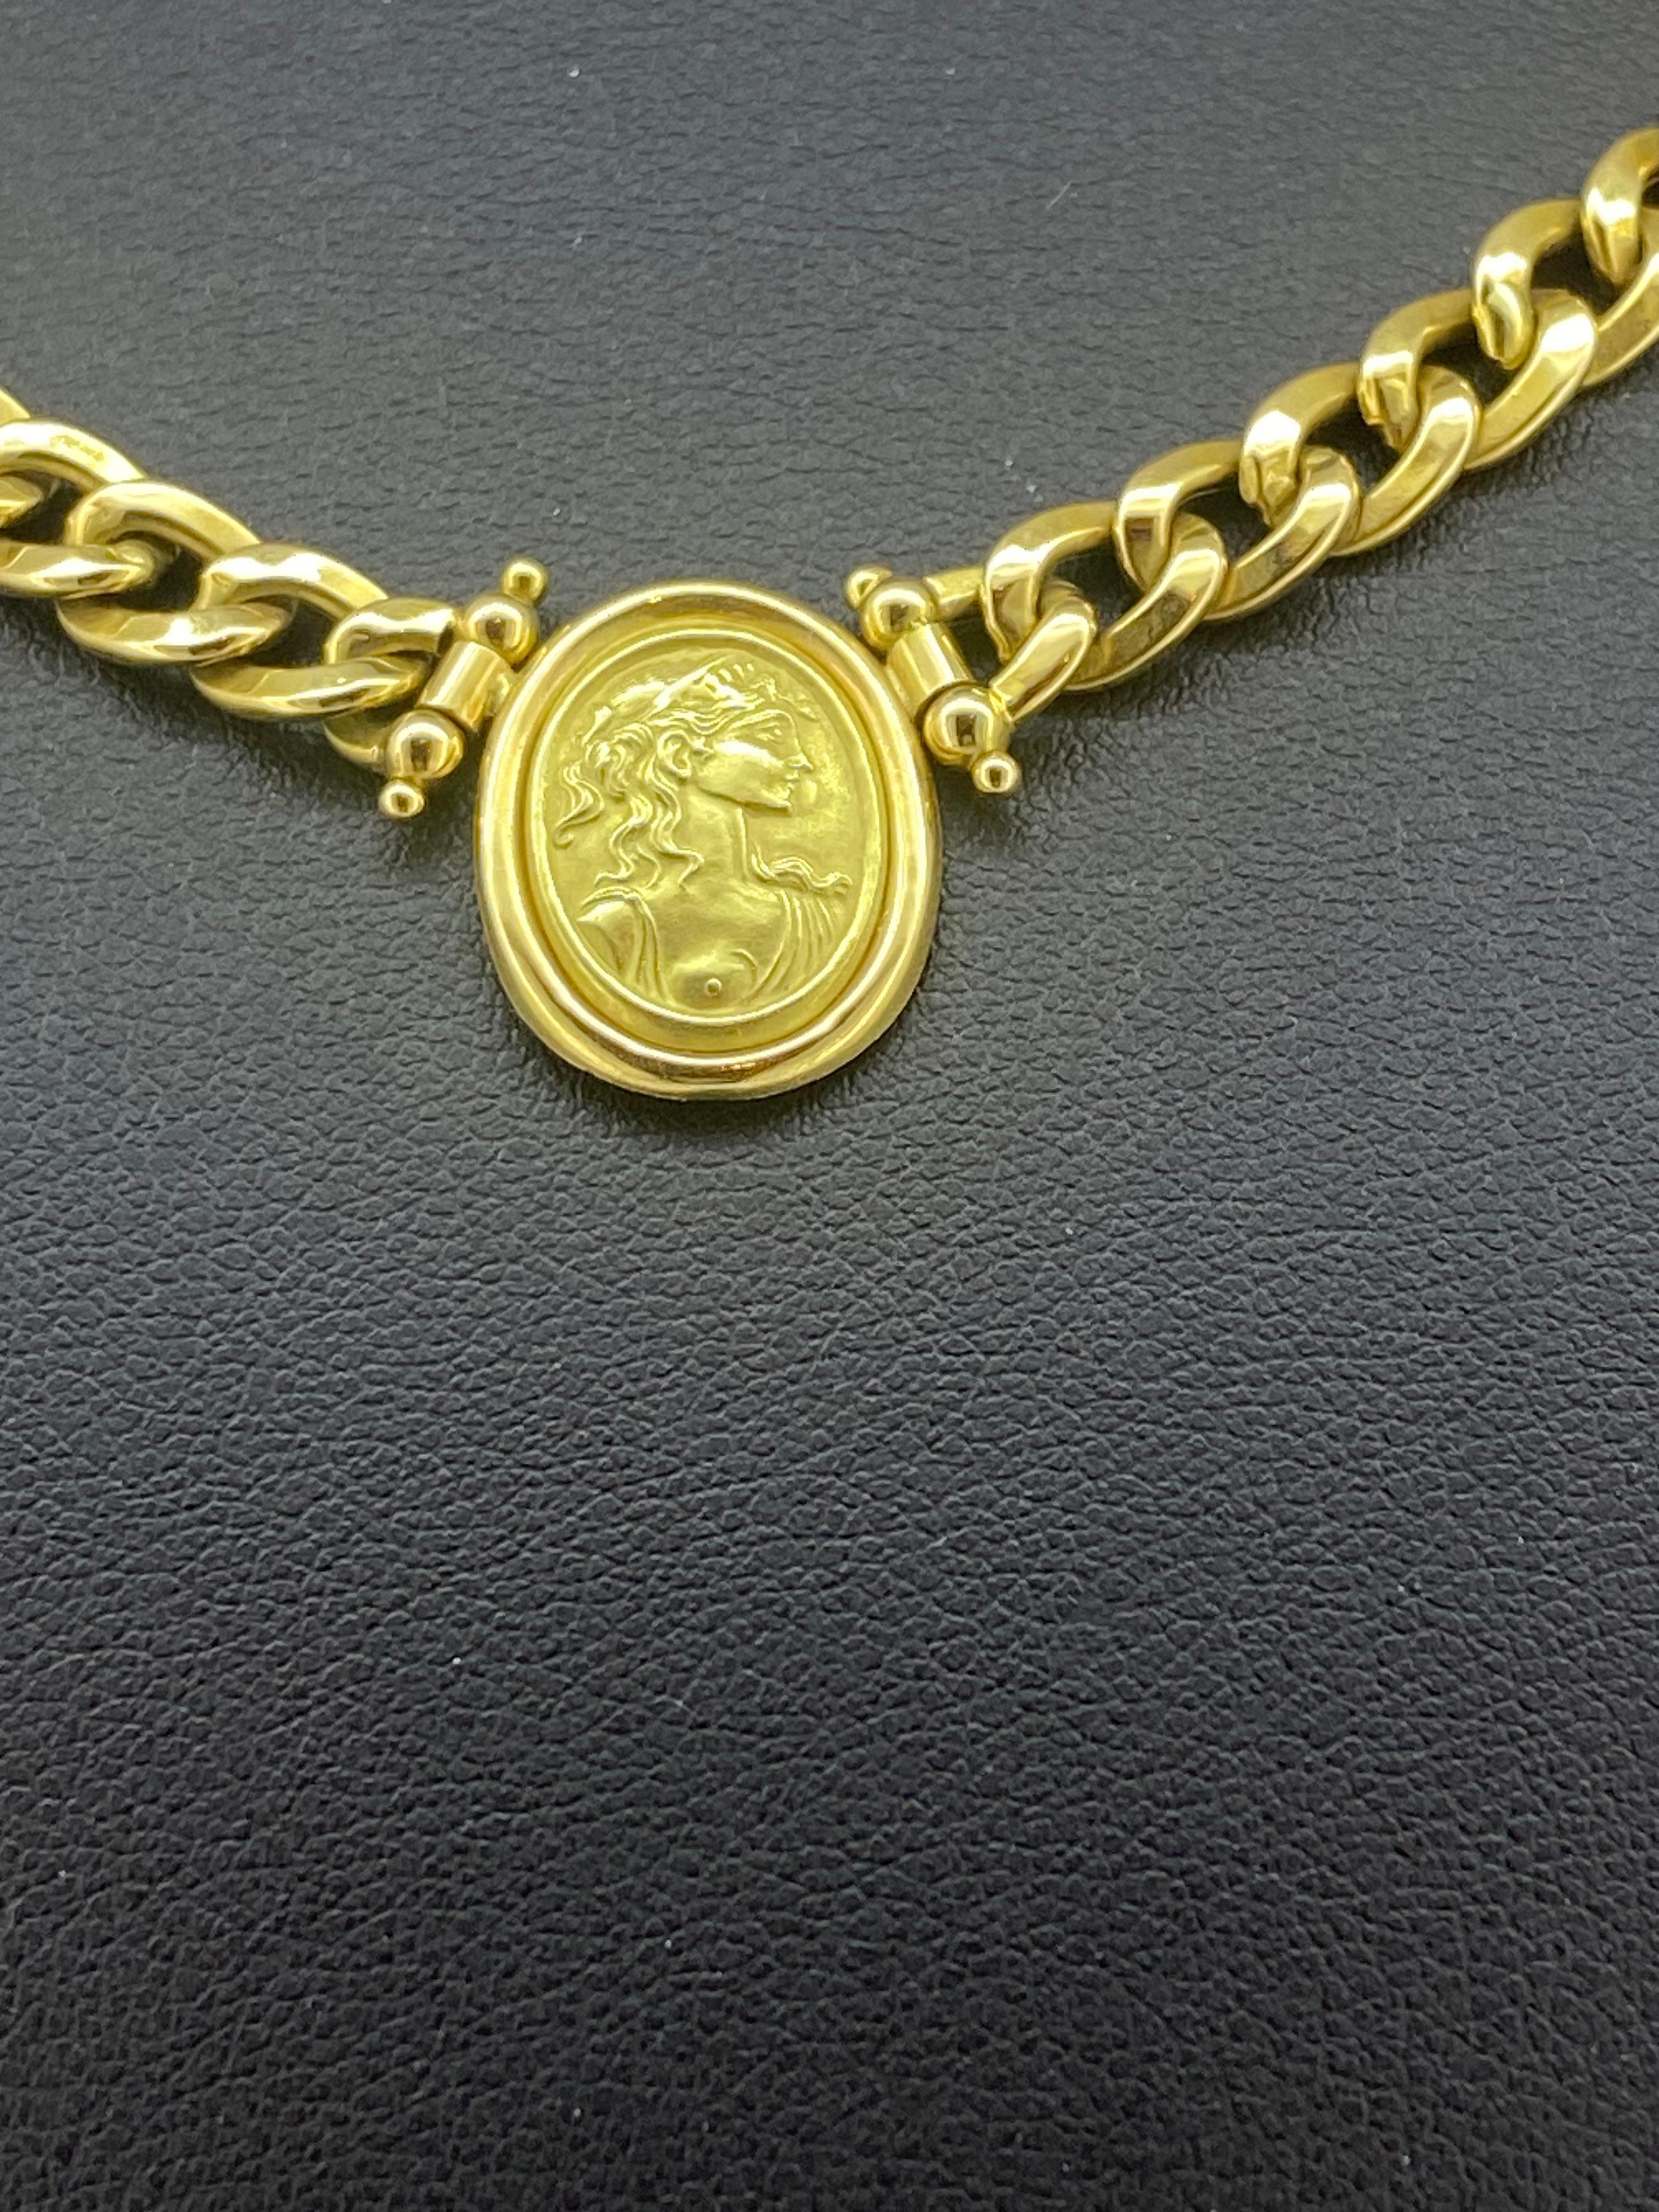 44 cm necklace